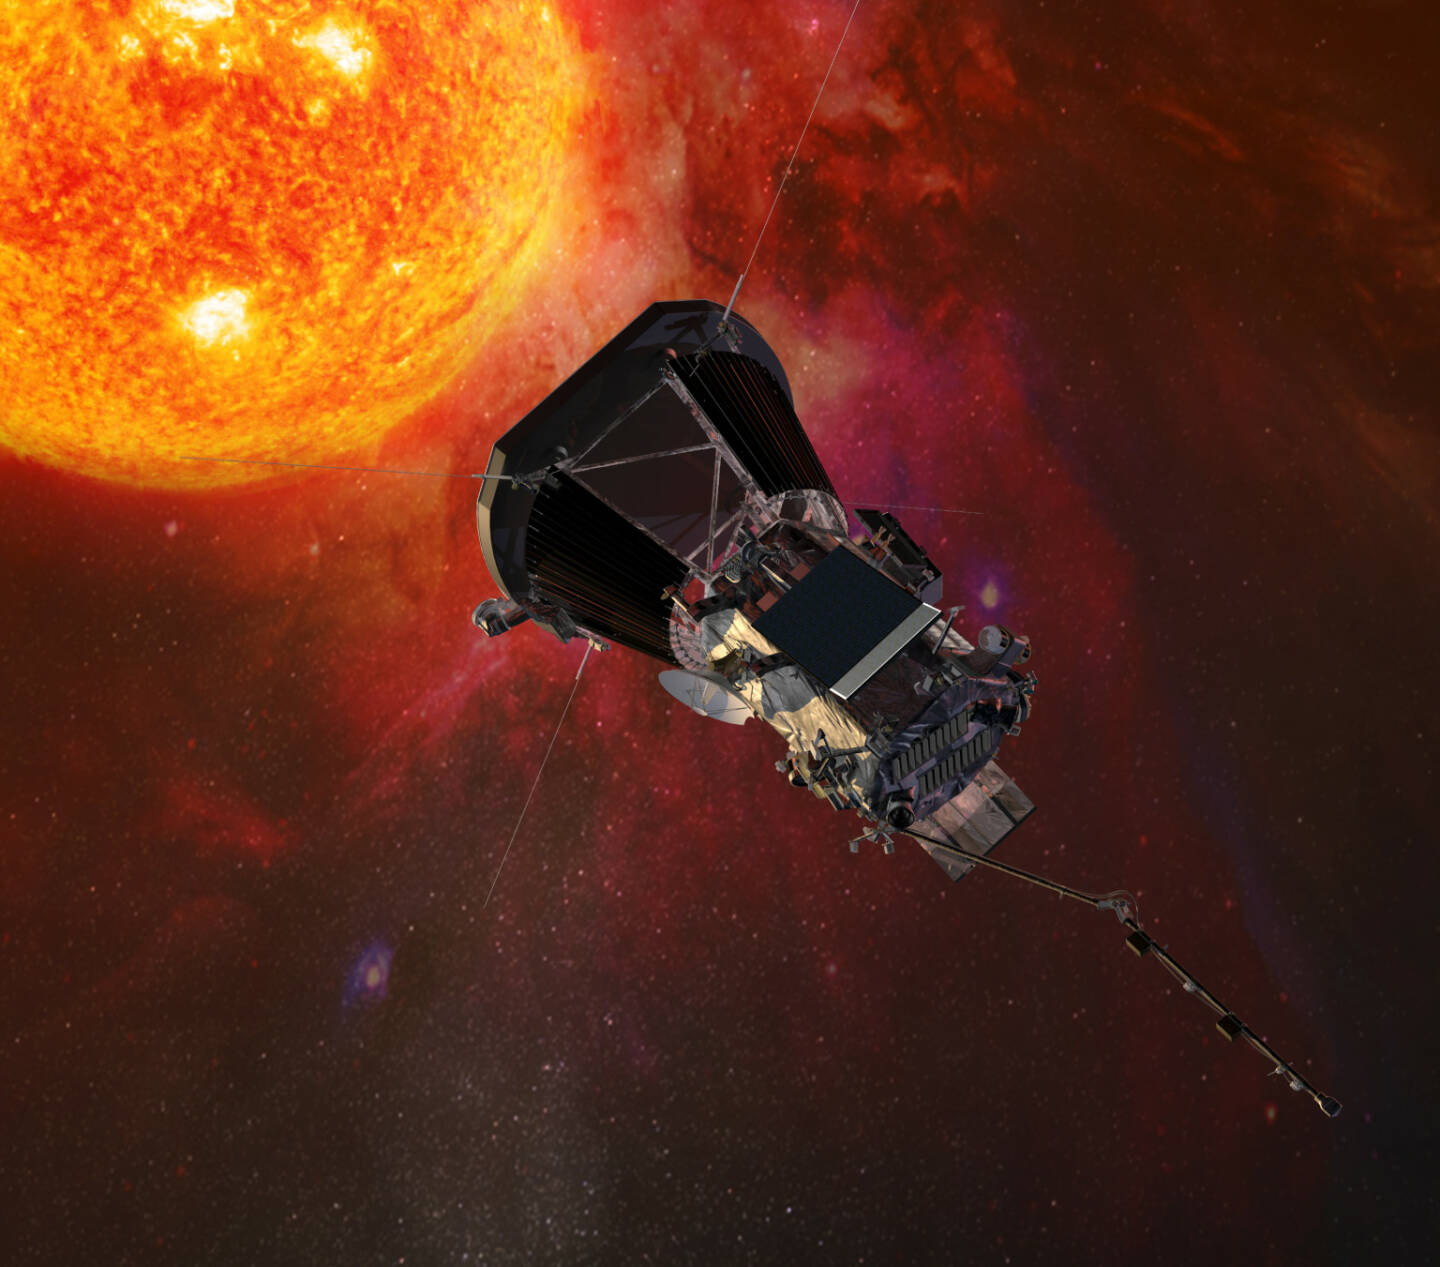 Naturhistorisches Museum: Vortrag zur Parker Solar Probe - Jener NASA-Mission, die unser Verständnis der Sonne revolutionieren will. Credit: Nasa